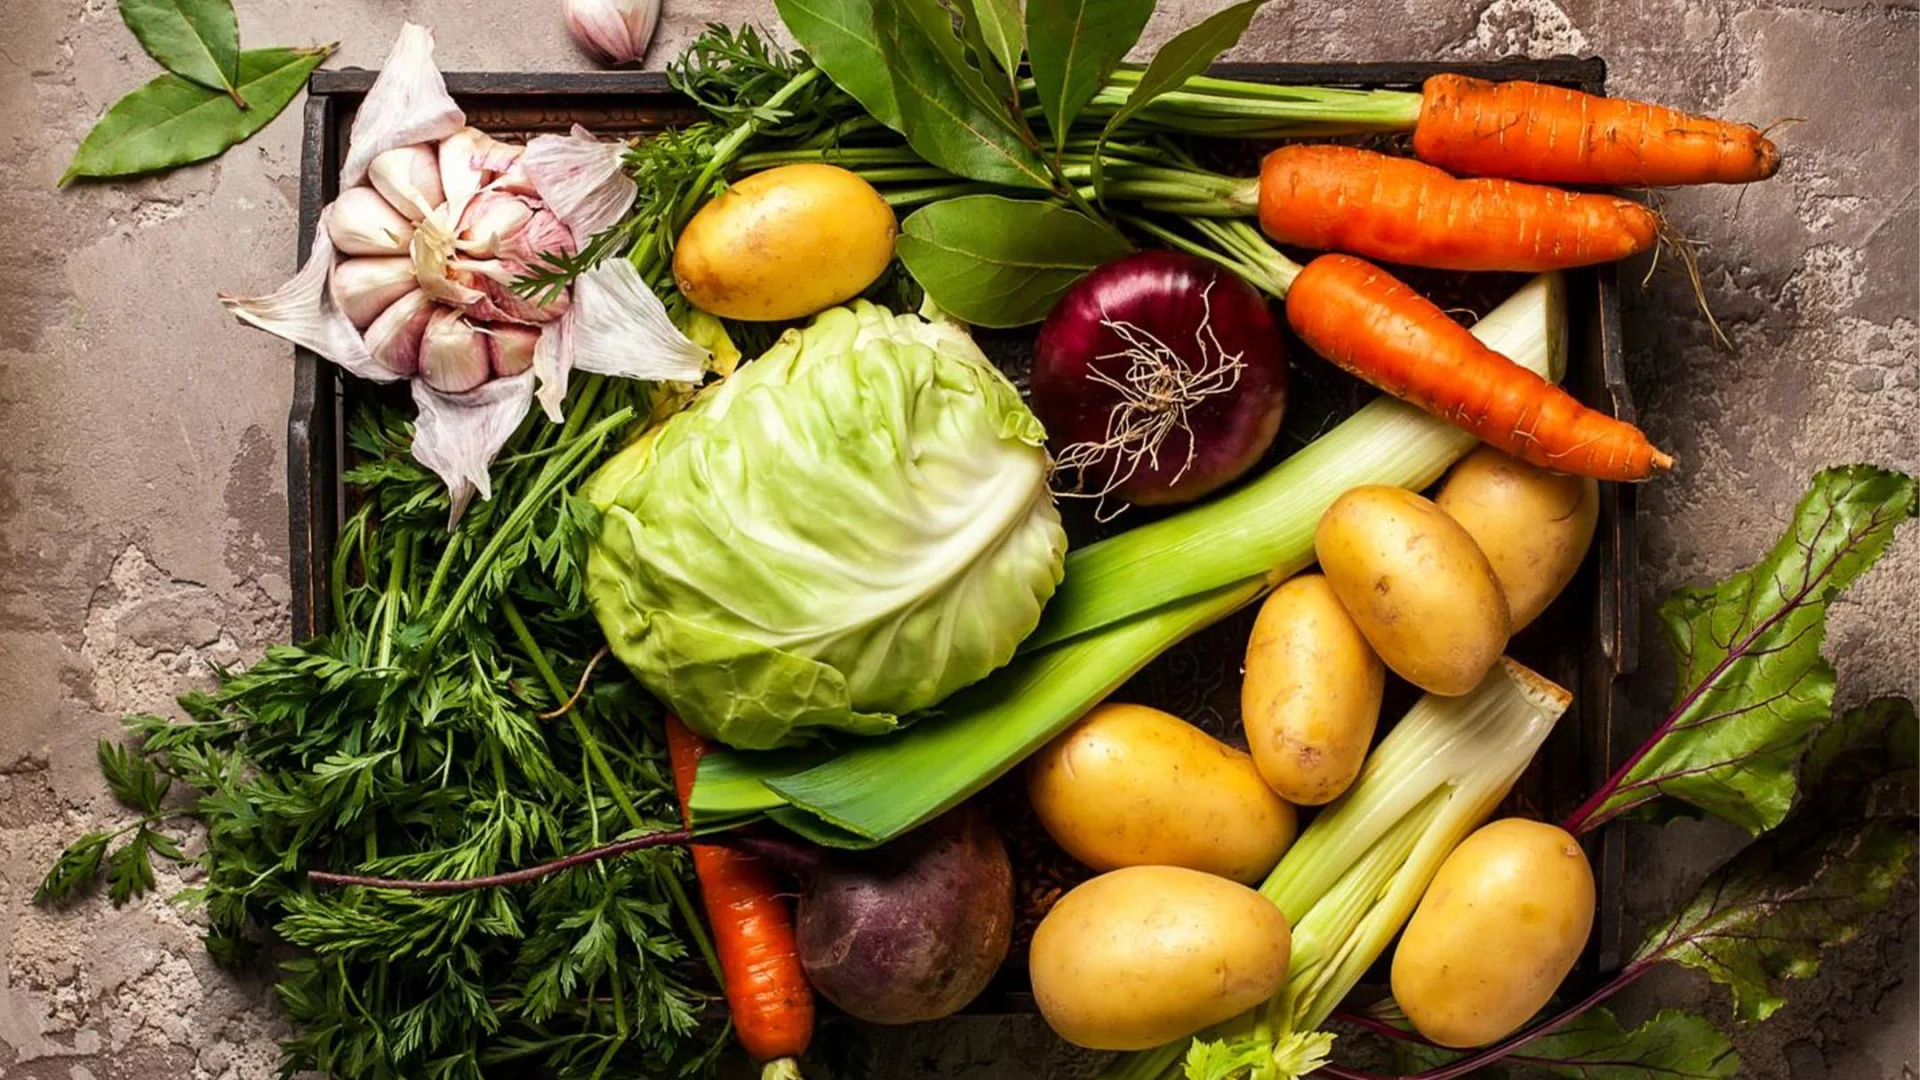 Frisches Gemüse wie Kartoffeln, Karotten, Kohl, Kräuter und Knoblauch